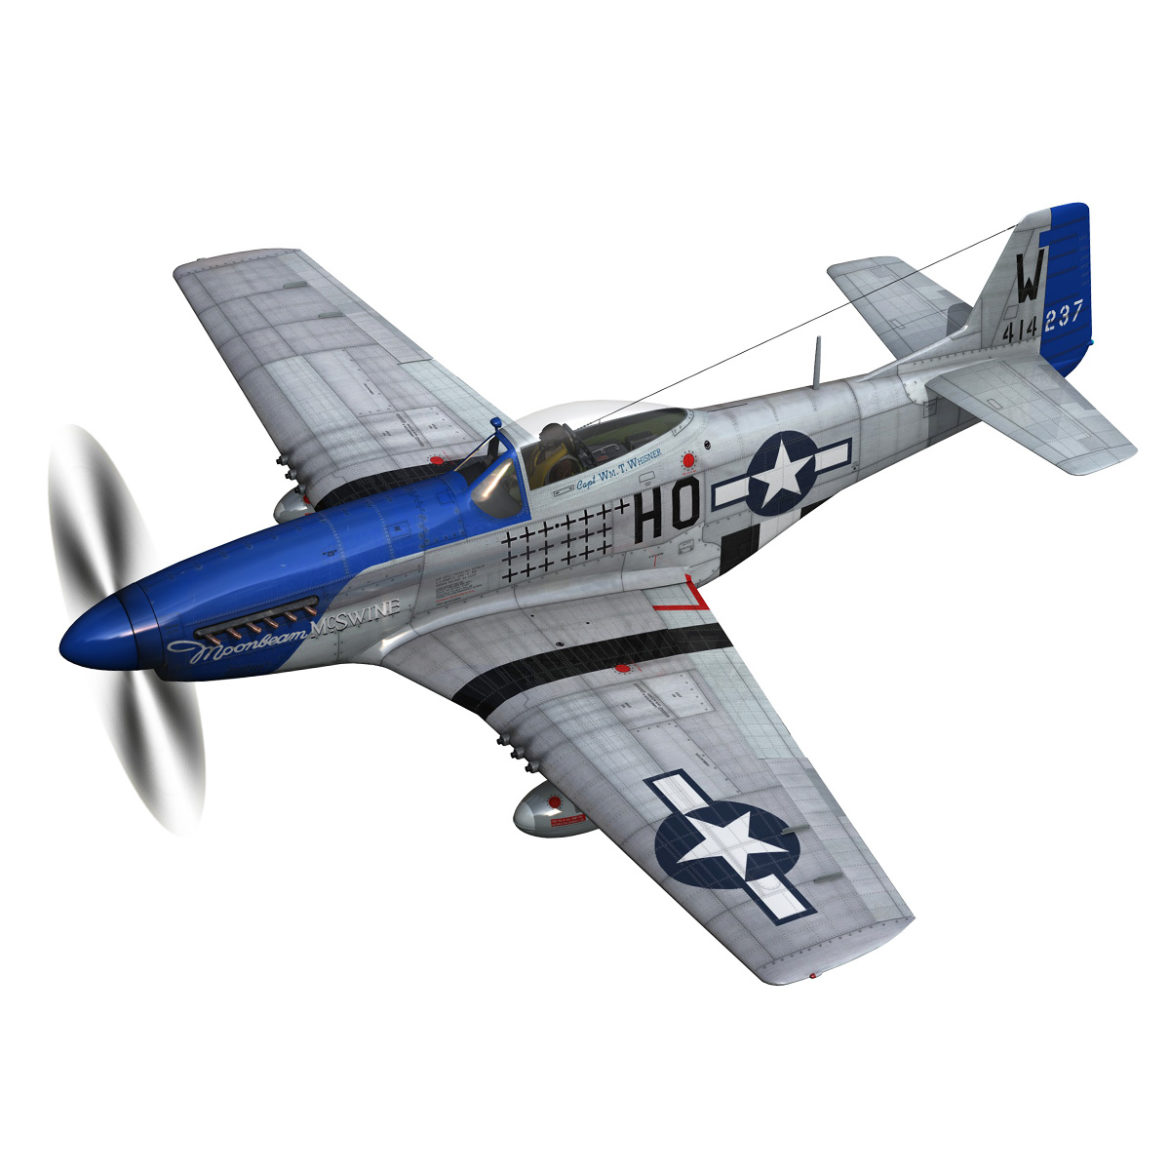  <a class="continue" href="https://www.flatpyramid.com/3d-models/vehicles-3d-models/aircraft/north-american-p-51d-mustang-moonbeam-mcswine/">Continue Reading<span> North American P-51D Mustang – Moonbeam McSwine</span></a>